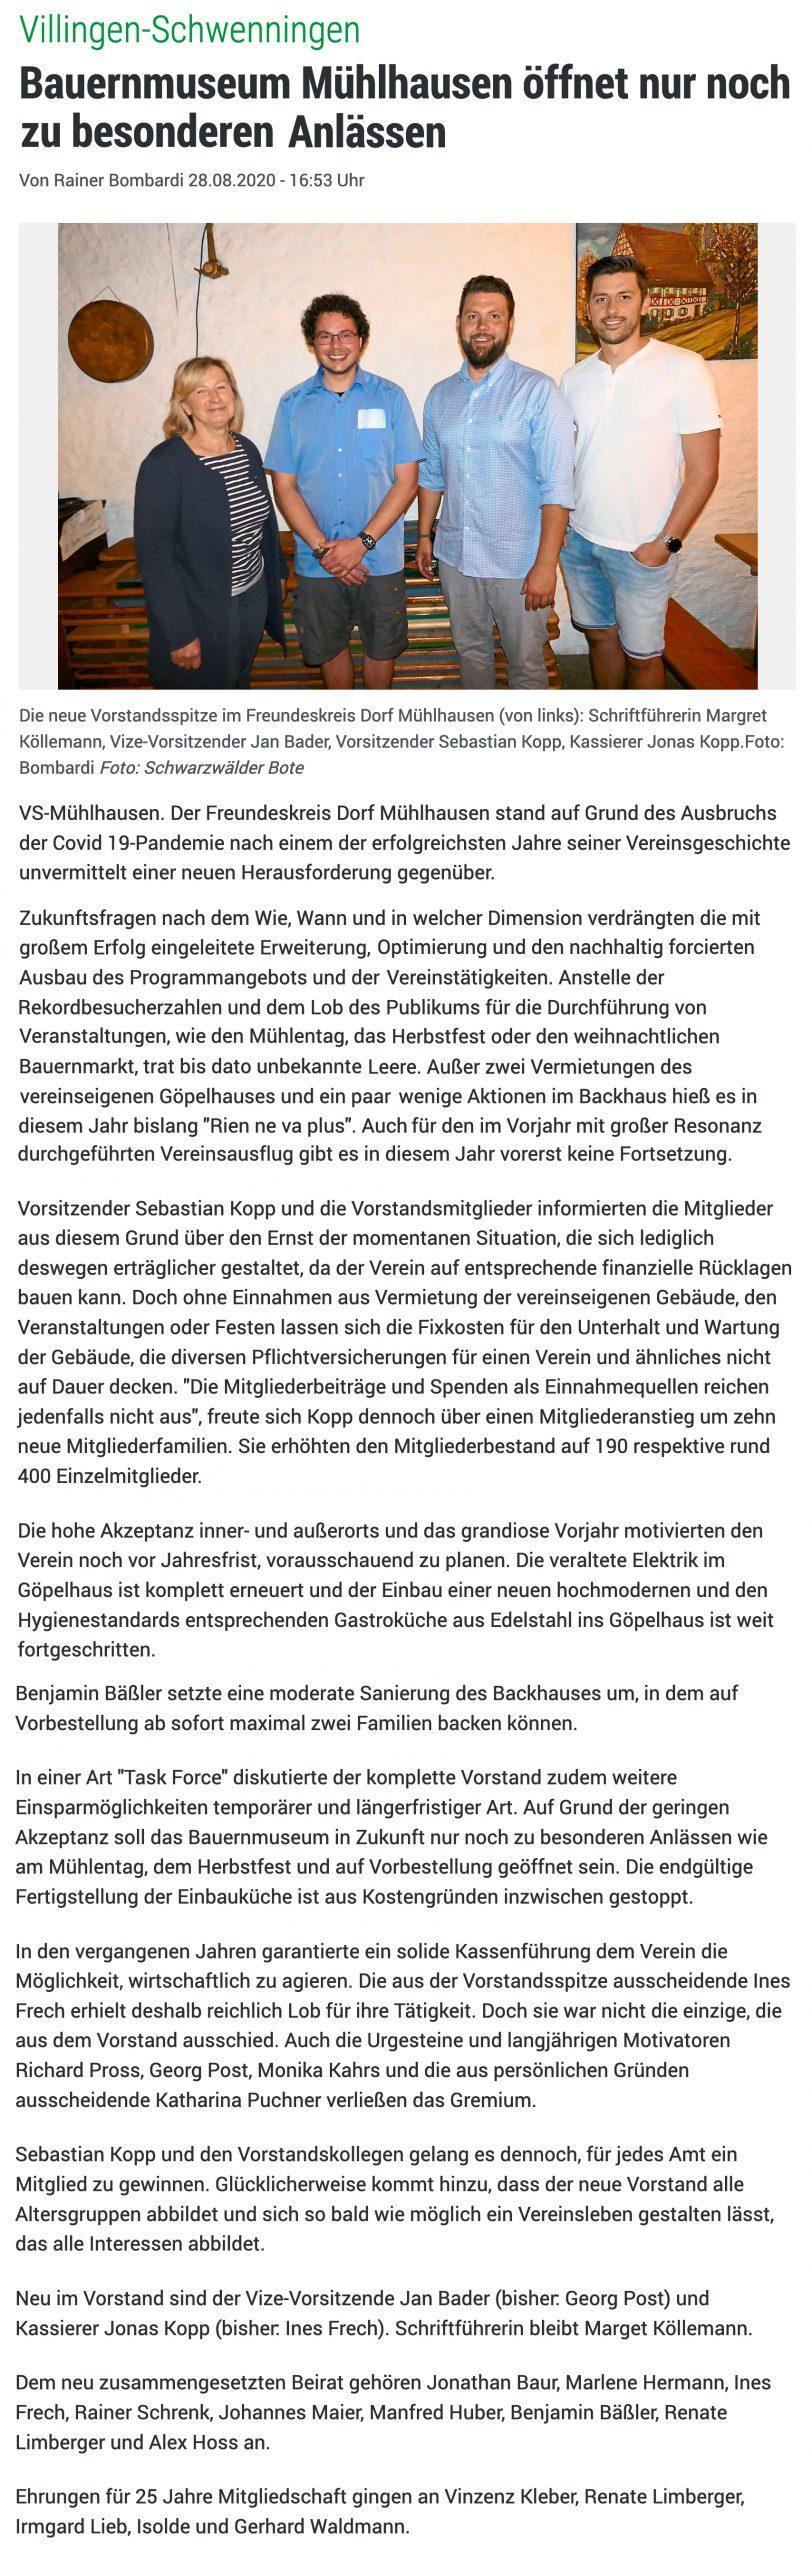 Bericht von Rainer Bombardi, Schwarzwälder Bote online vom 28.08.2020